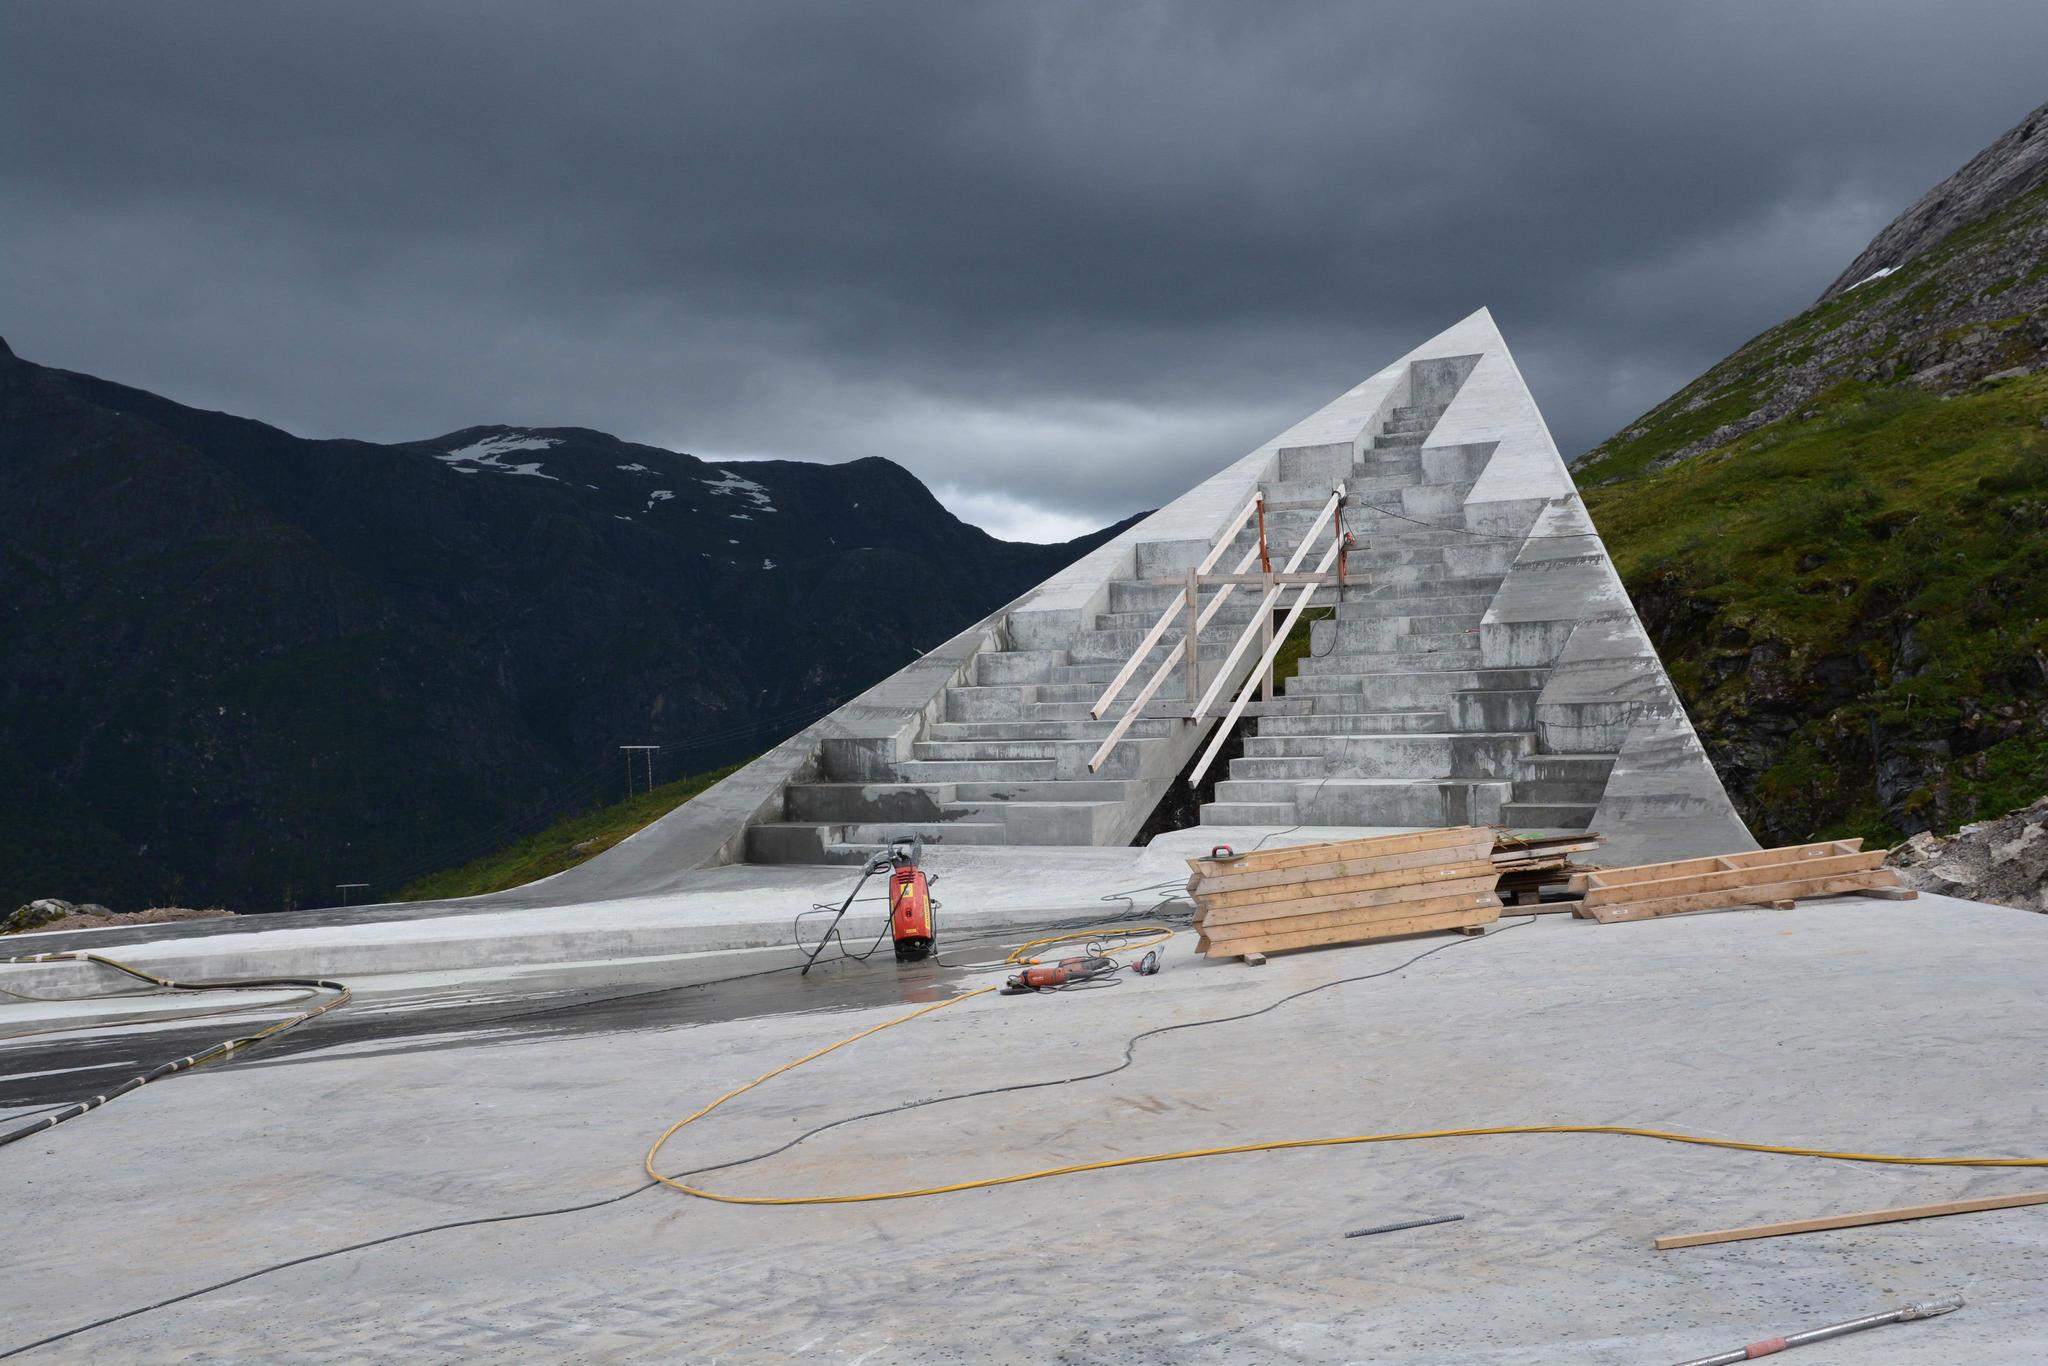 MEKTIG: - Satsingen på Nasjonale turistveger er imponerende og viktig for Norge, mener ekspert i markedsføring. Utsikten ligger på  vei mot det høyeste punktet på Gaularfjellet.